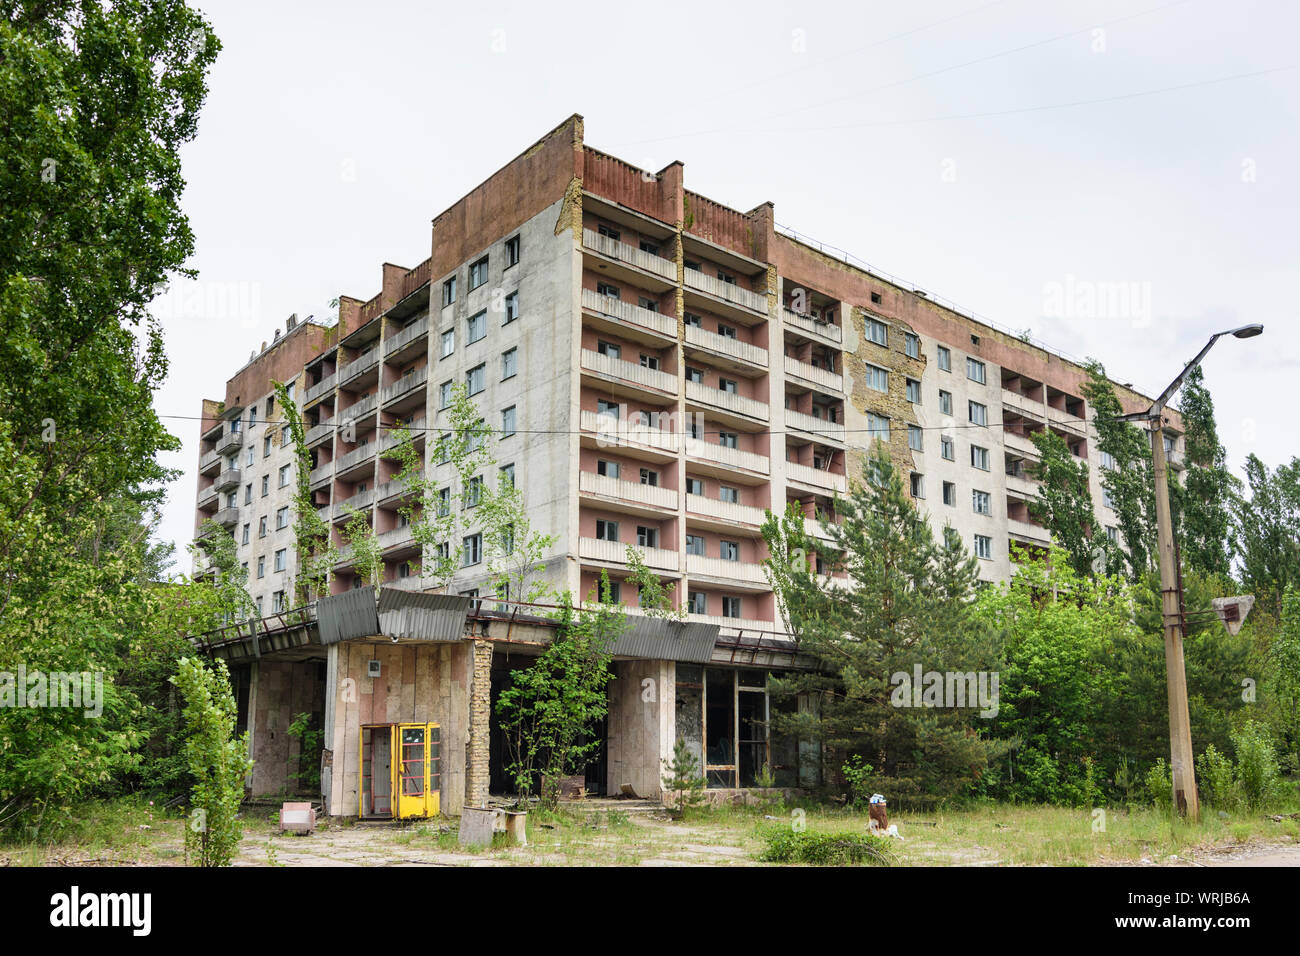 Pripyat (Prypiat): abandoned apartment houses in Chernobyl (Chornobyl) Exclusion Zone, Kiev Oblast, Ukraine Stock Photo